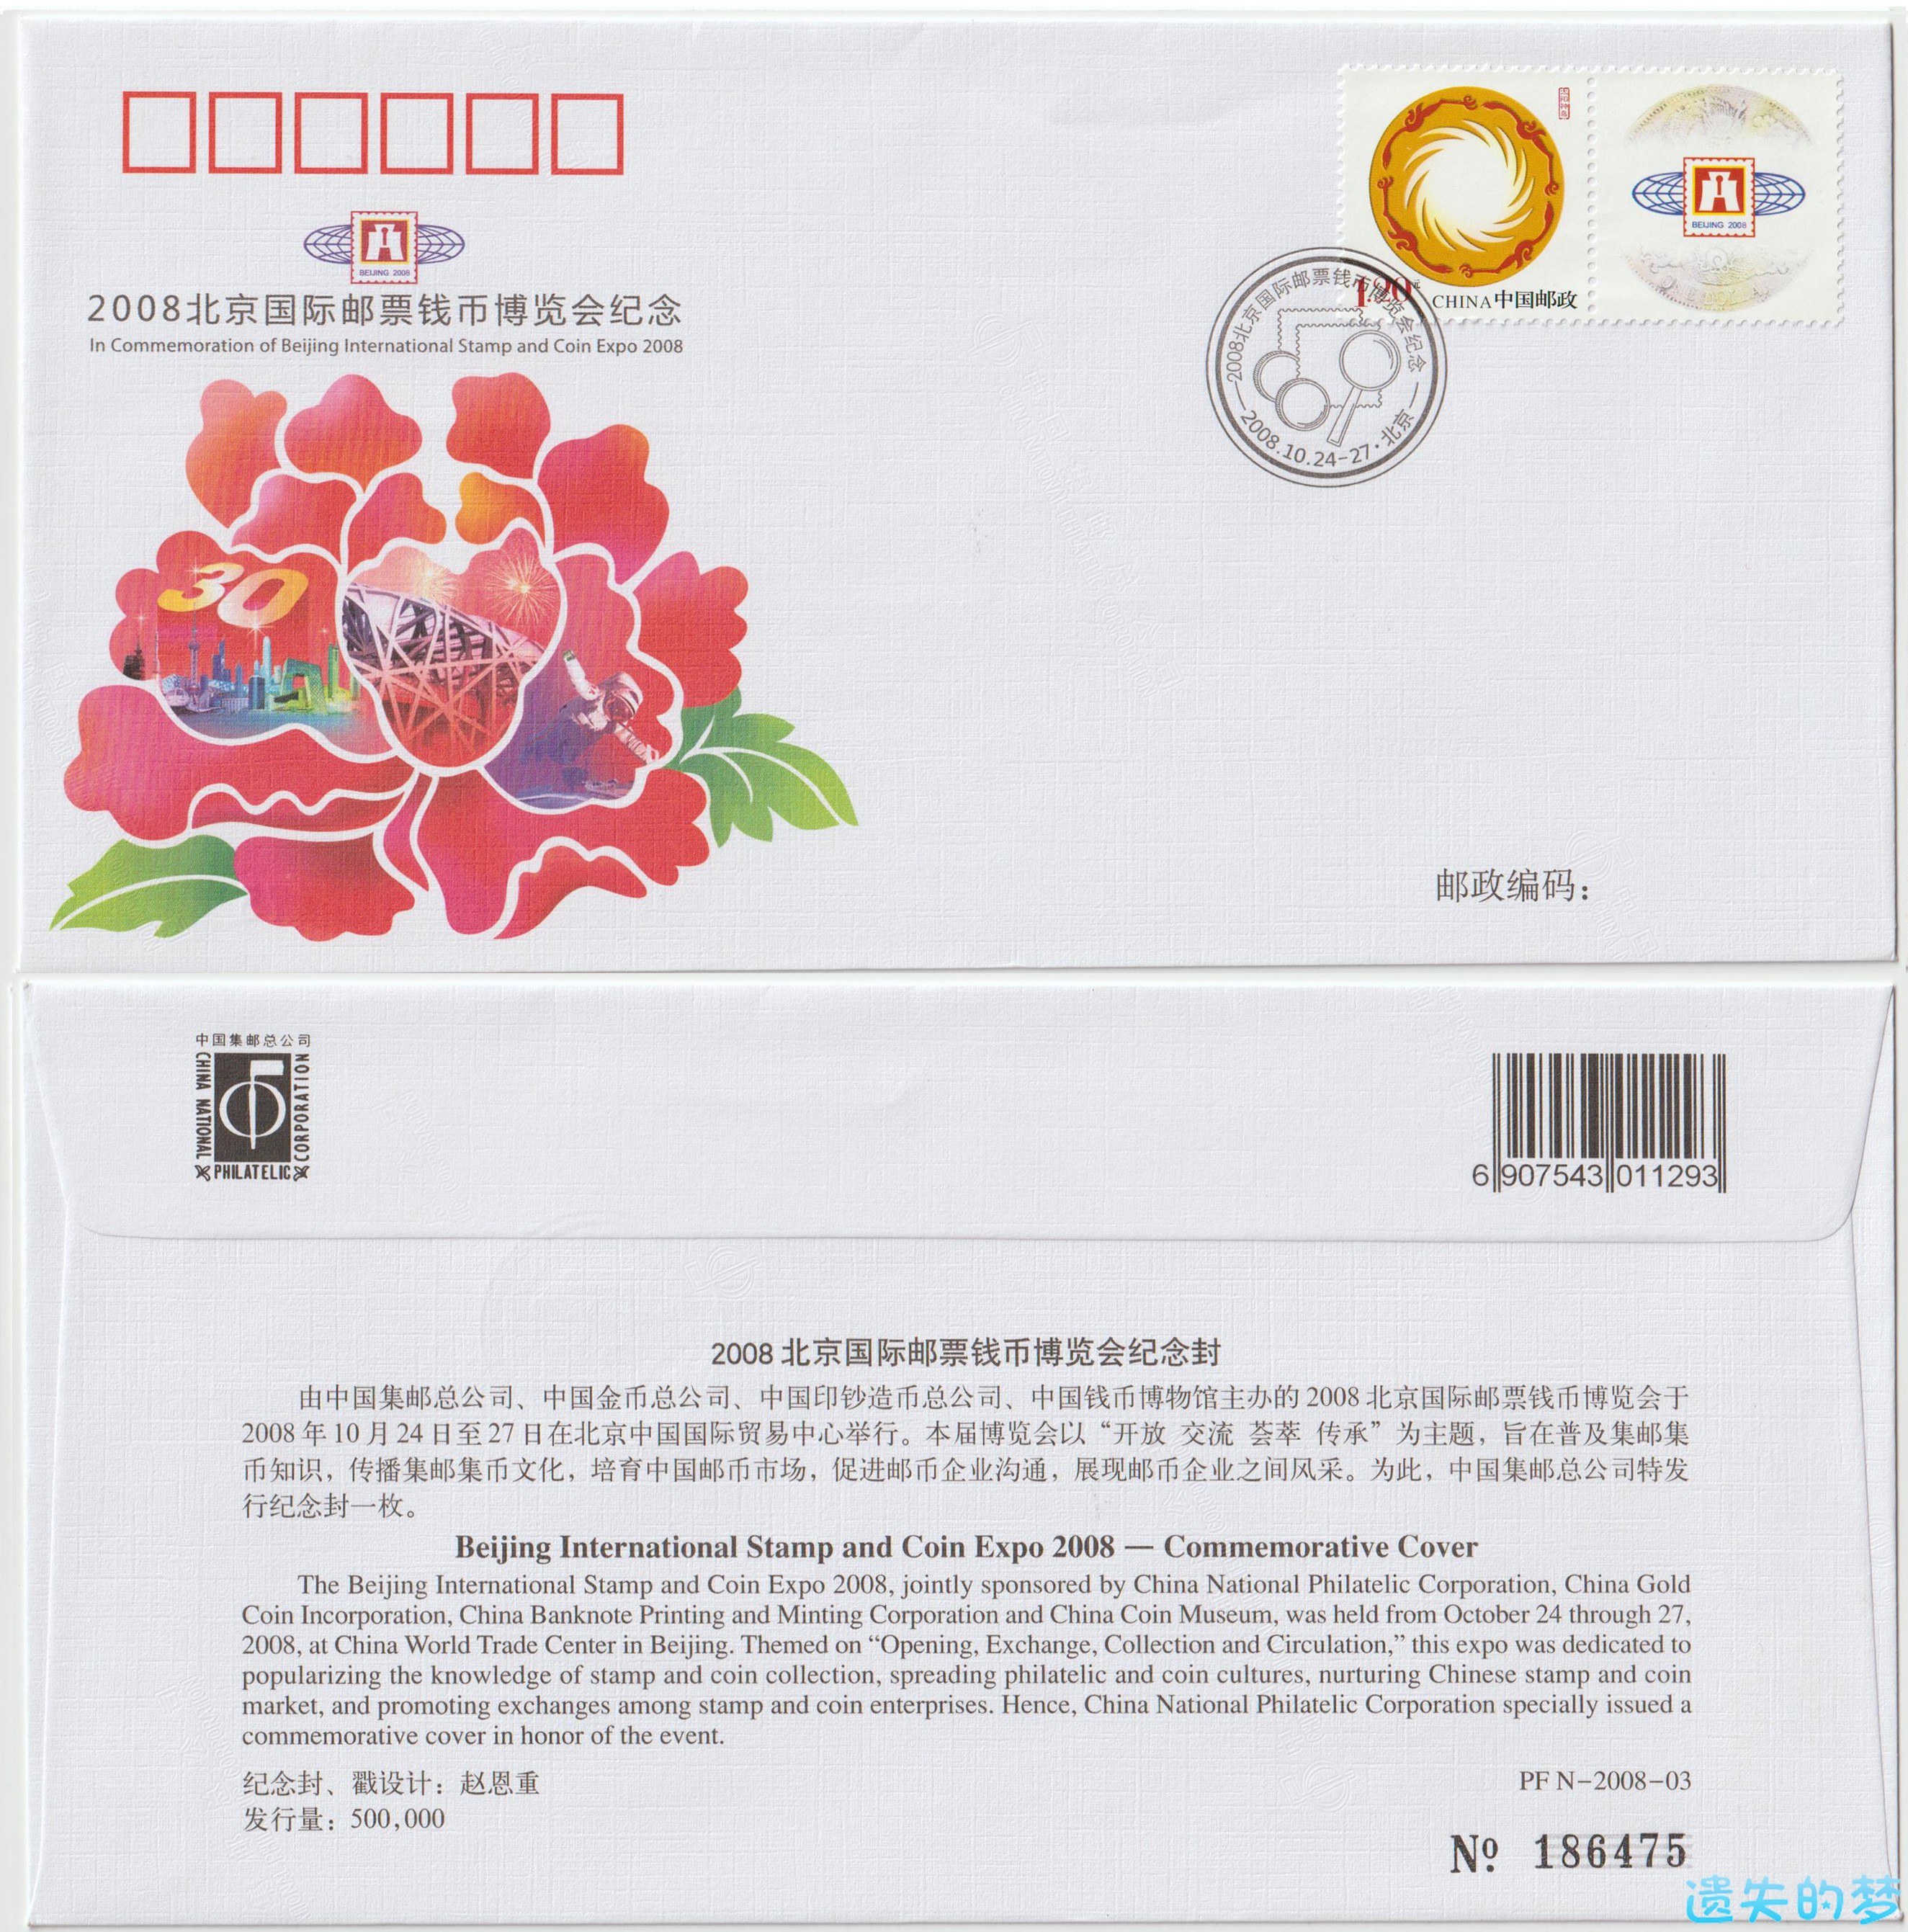 2008北京国际邮票铅笔博览会纪念封.jpg